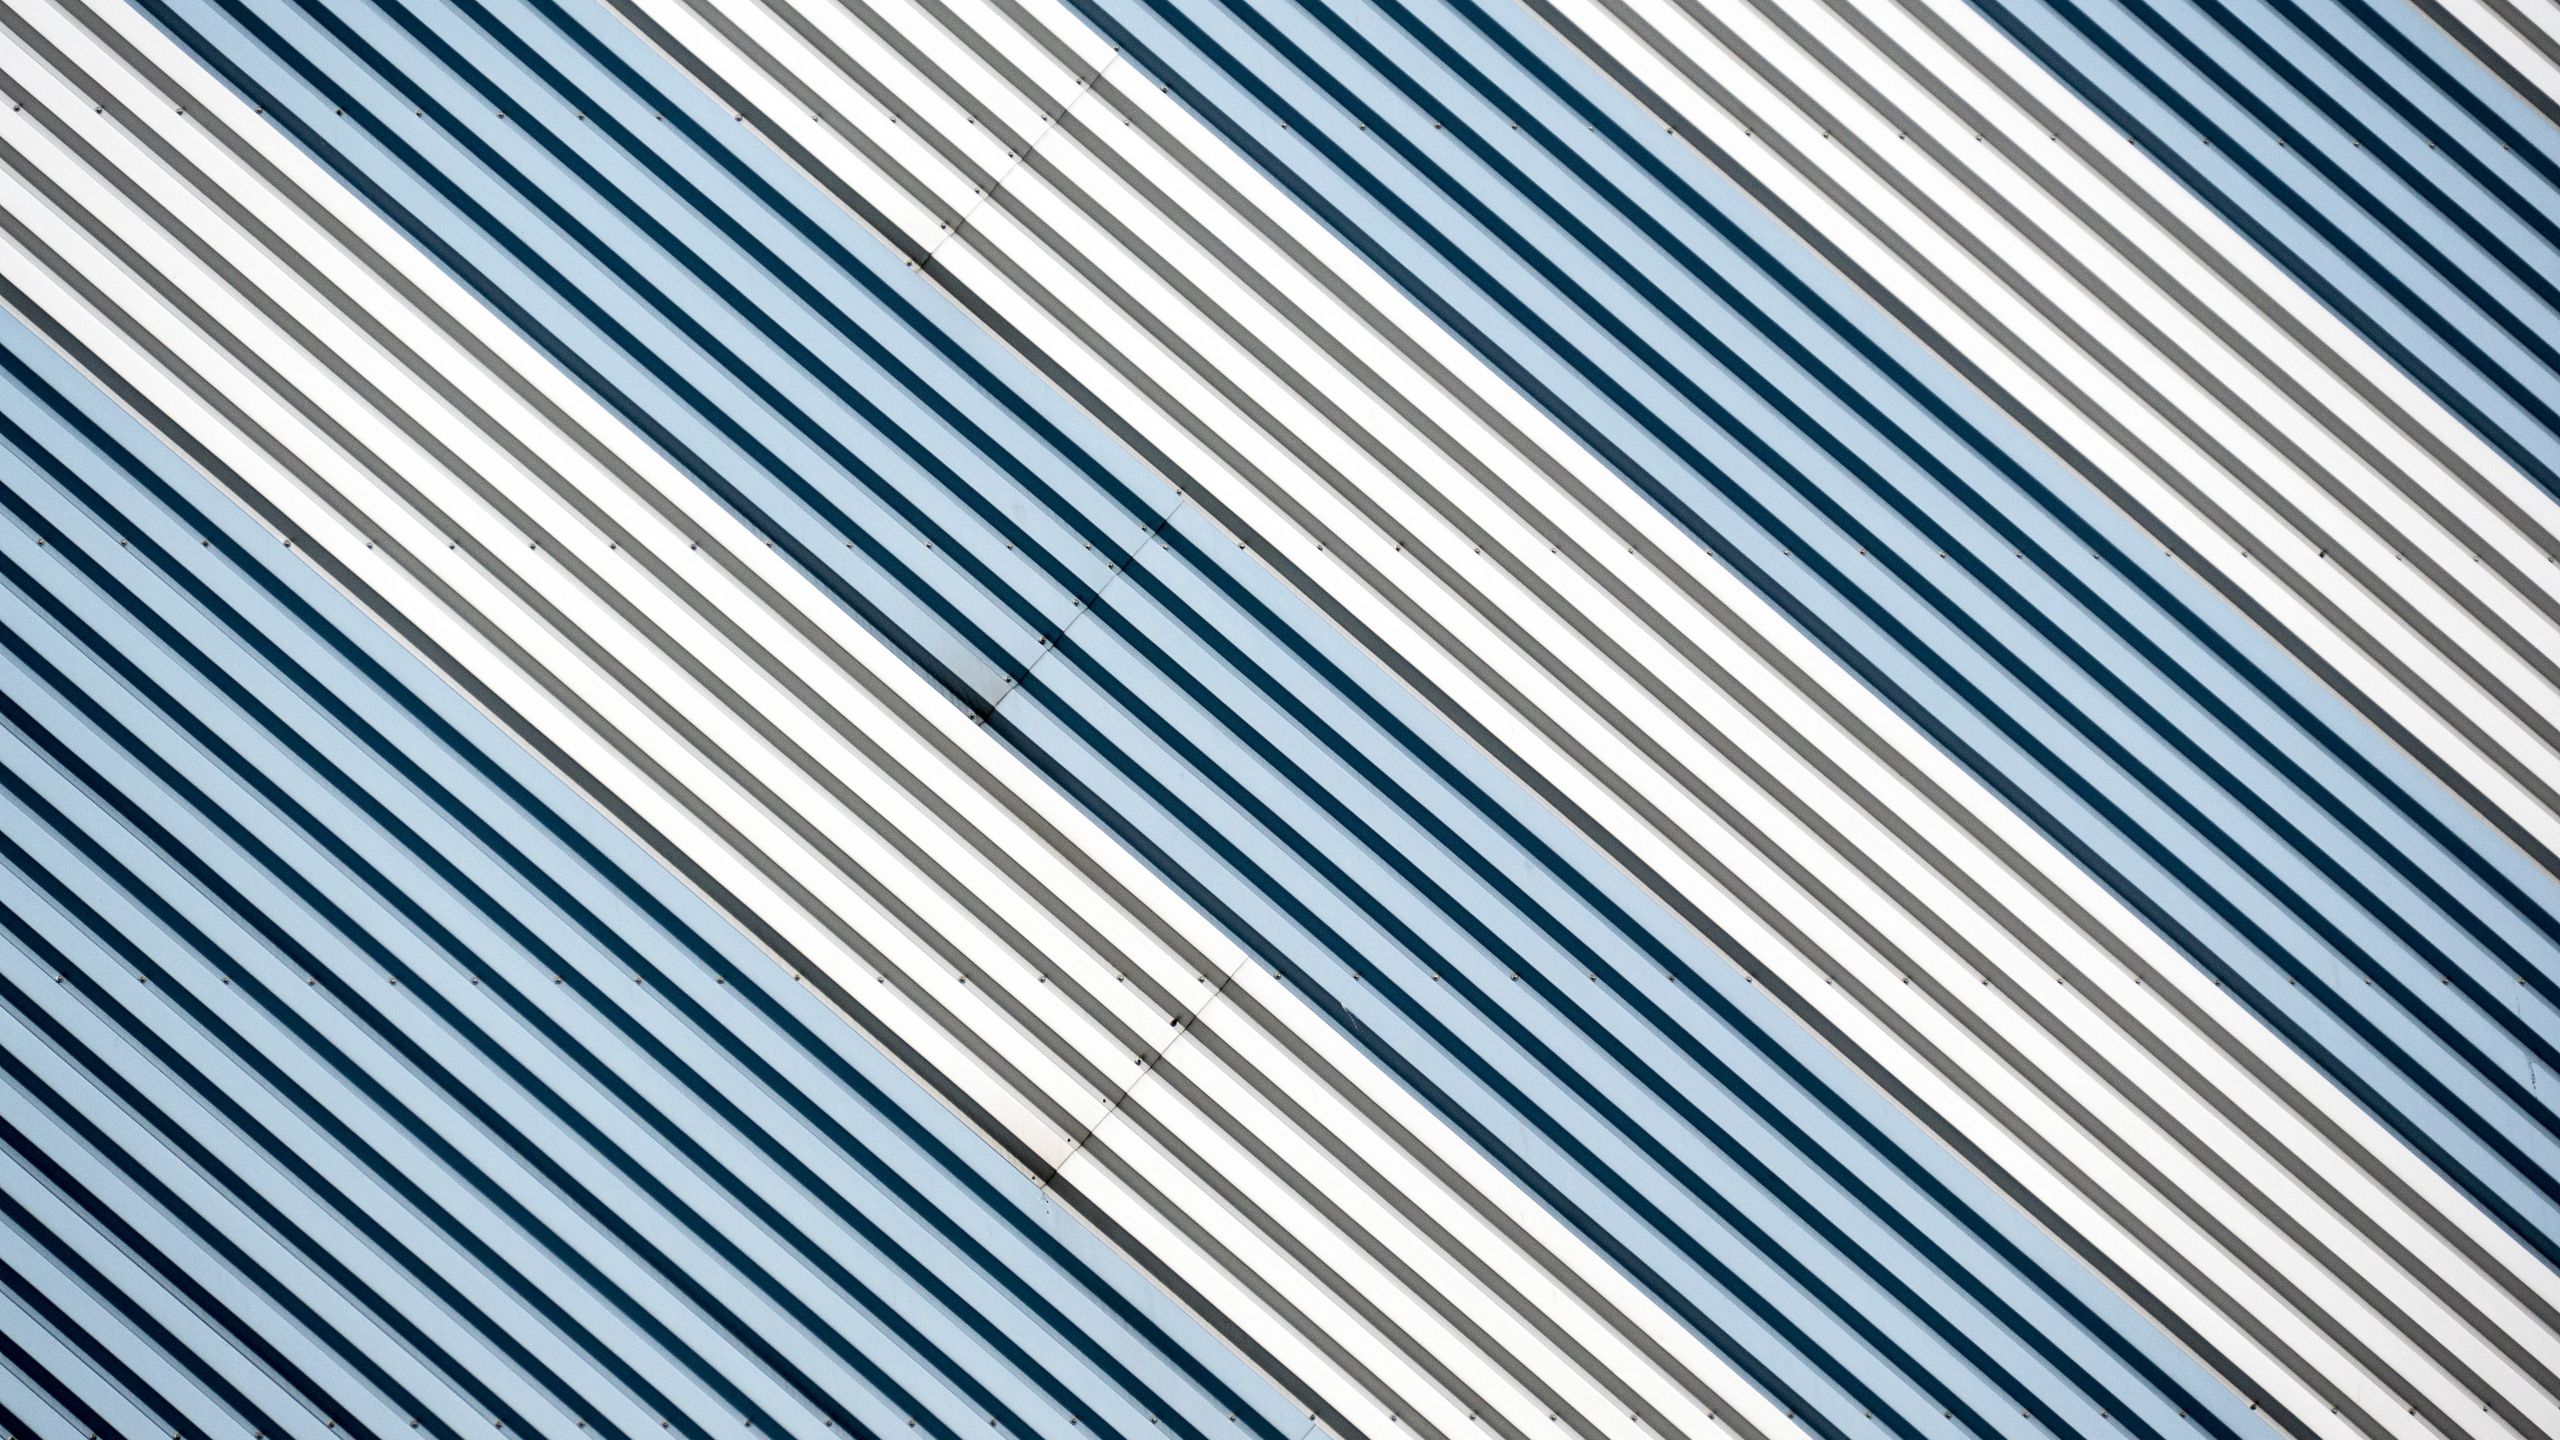 Download Wallpaper 2560x1440 Texture Lines Obliquely Widescreen 169